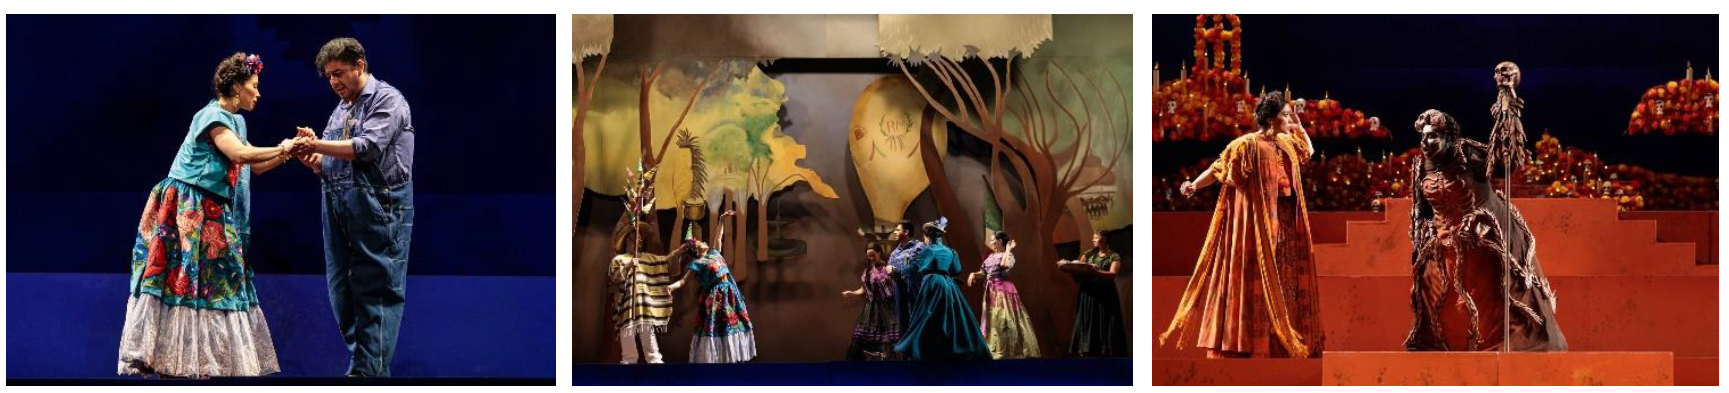 Scenes from El último sueño de Frida y Diego. Photos: Karli Cadel/San Diego Opera